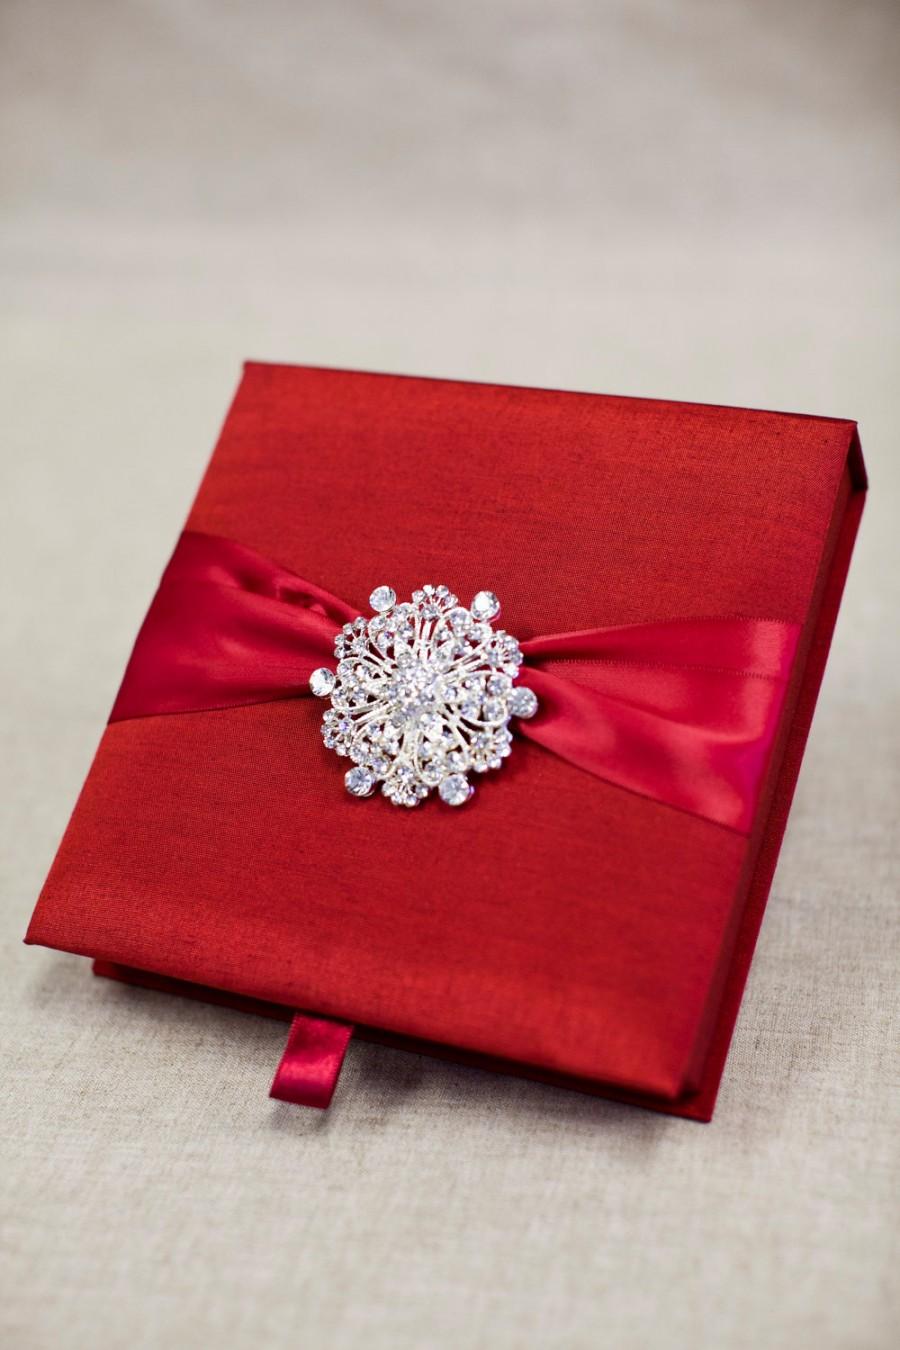 Wedding - Wedding Invitation Silk Fabric Box with Satin Ribbon and a Shimmery Rhinestone Brooch